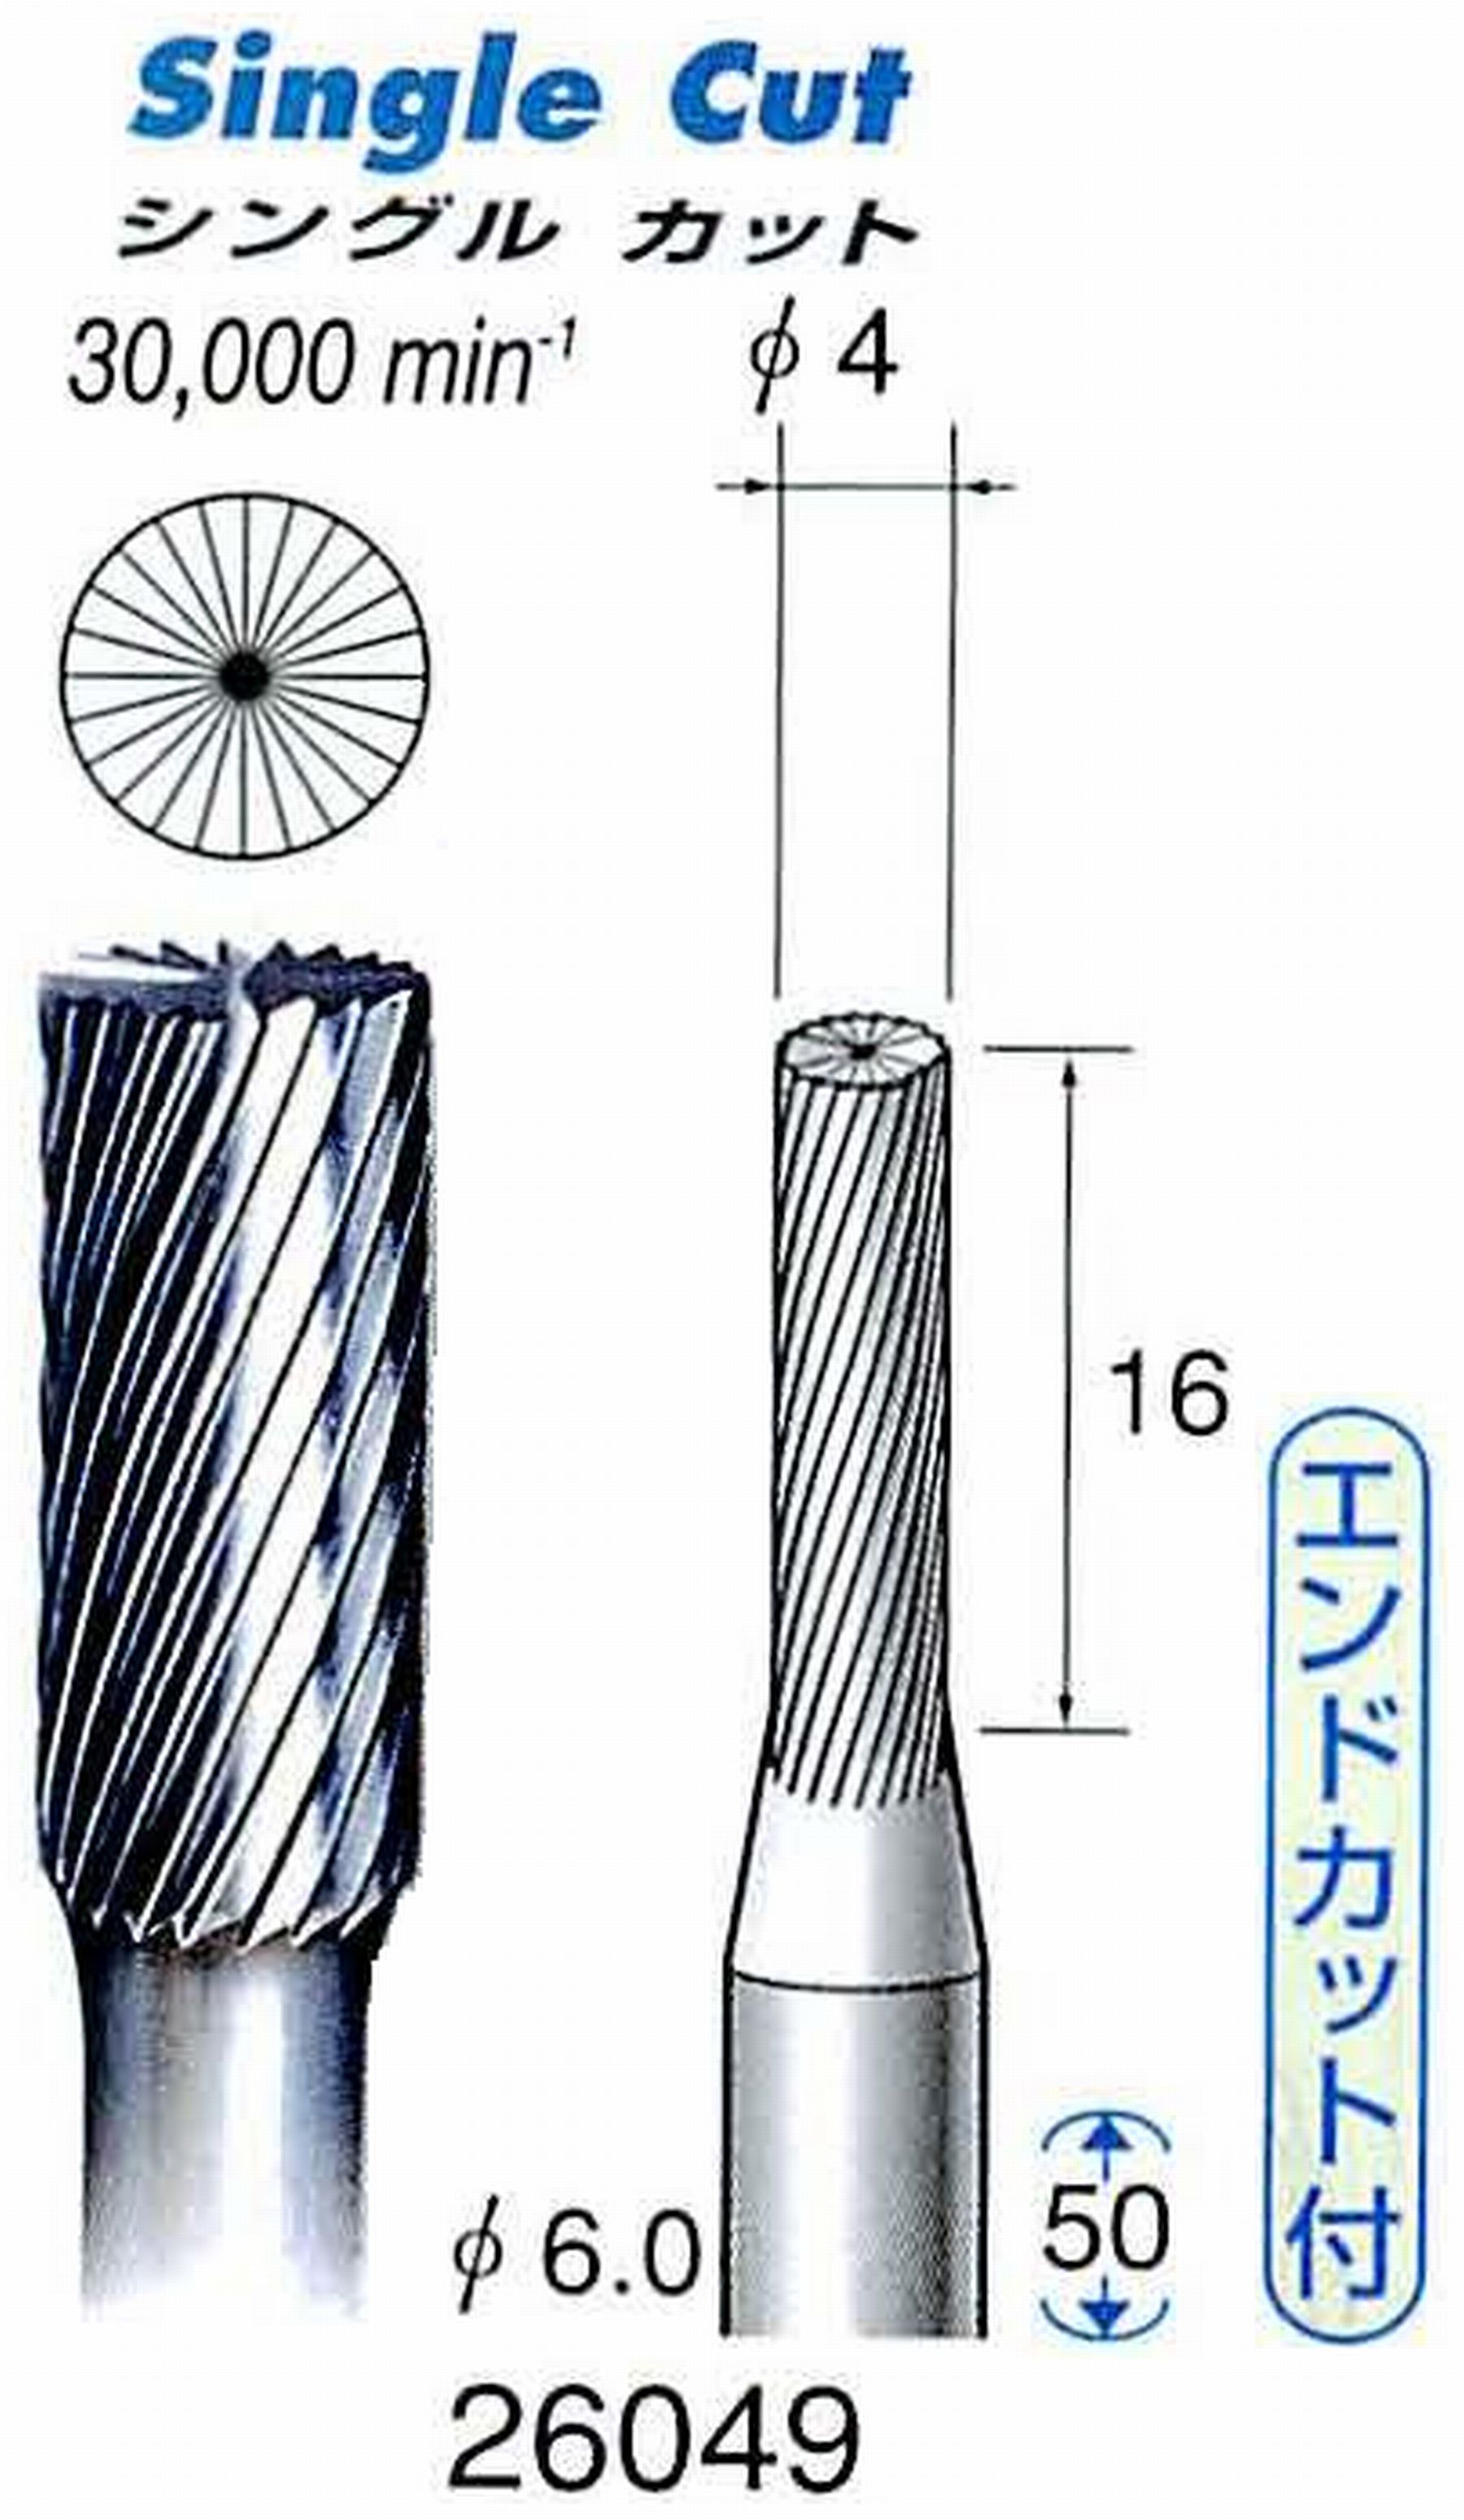 ナカニシ/NAKANISHI 超硬カッター(エンドカット付) 軸径(シャンク)φ6.0mm 26049